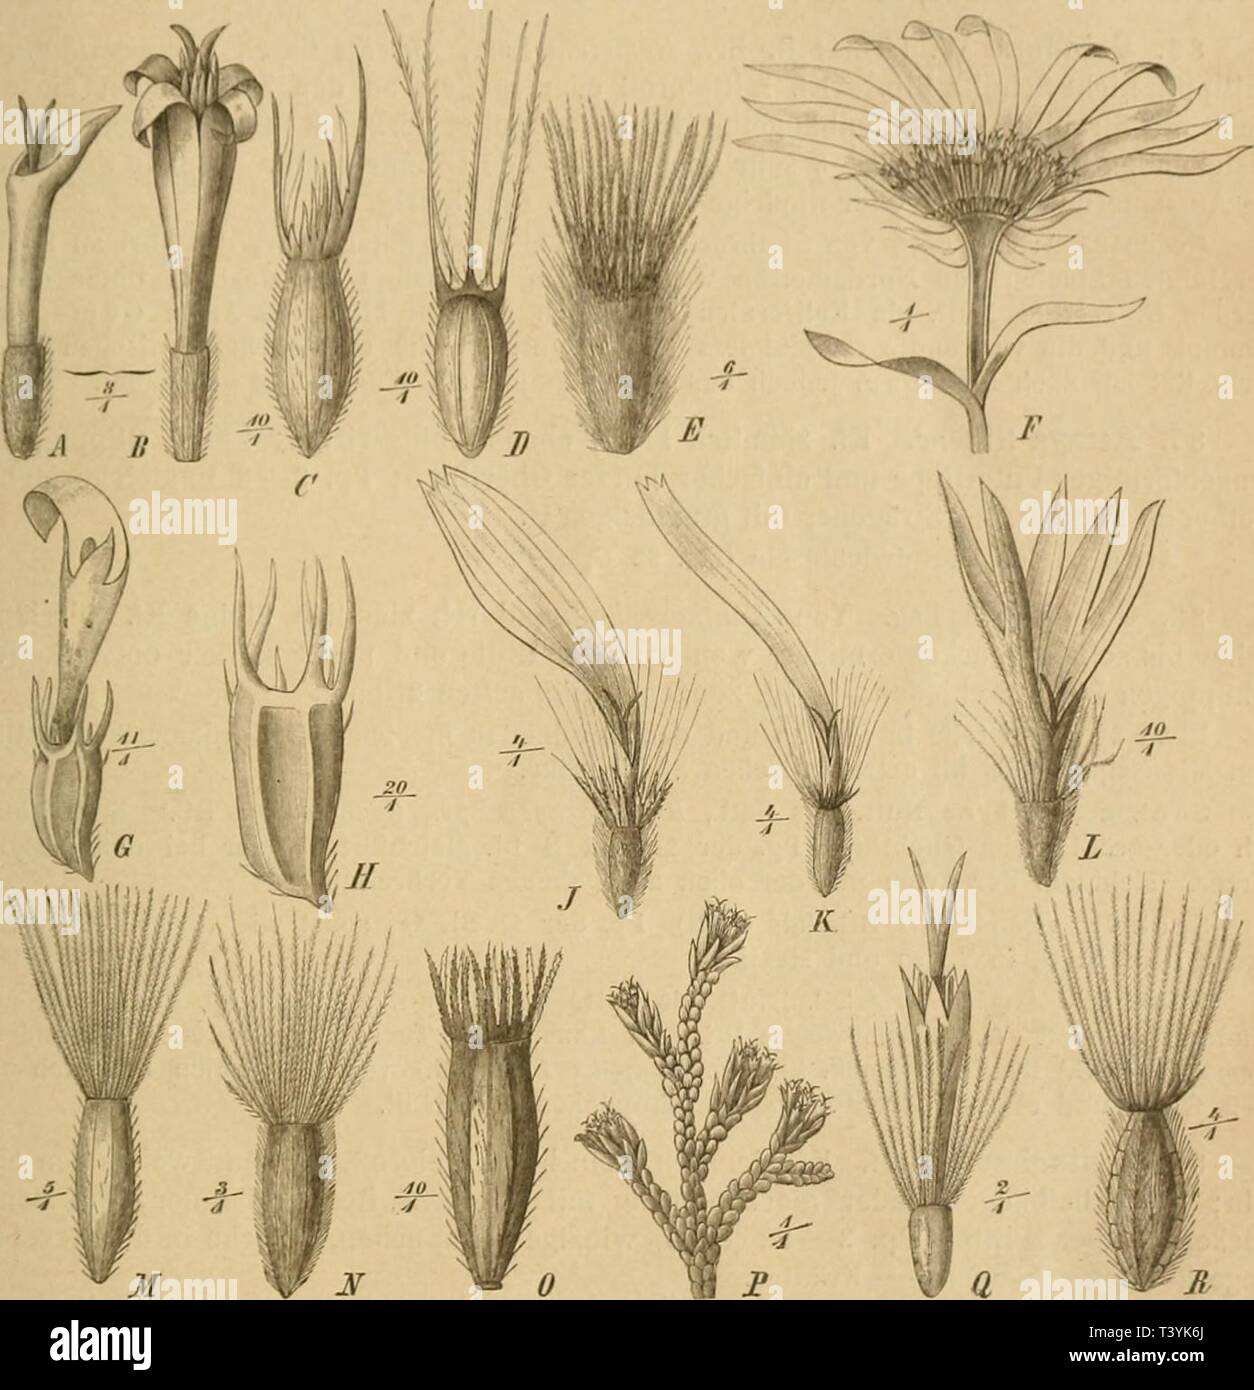 Archive image from page 360 of Die Natürlichen Pflanzenfamilien  nebst. Die Natürlichen Pflanzenfamilien : nebst ihren Gattungen und wichtigeren Arten, insbesondere den Nutzpflanzen  dienatrlichenp44engl Year: 1887  Cuinpusilue. vllolVinaiin., 1 r OD l'appiishoislcMi lieihi}.', zioinlicli fileicli lang; Fr. zusaiiiiuengedrückt Conyzinae iChrysoconia], -[-7 B. lieral)laufeiul Conyzinae (Heleromma). ♦*** l'll. ans Siideiiropa mlcr Aii'ii Asteriuar Asler).    Fig. S2. A, B Q und g Bl. von OijiniiosiJeiina glutinosum (Spr.) Less. — C Leere Fr. von Xanthocephaliim nym- nospennoides (A. Gr.) Ueuth. Stock Photo